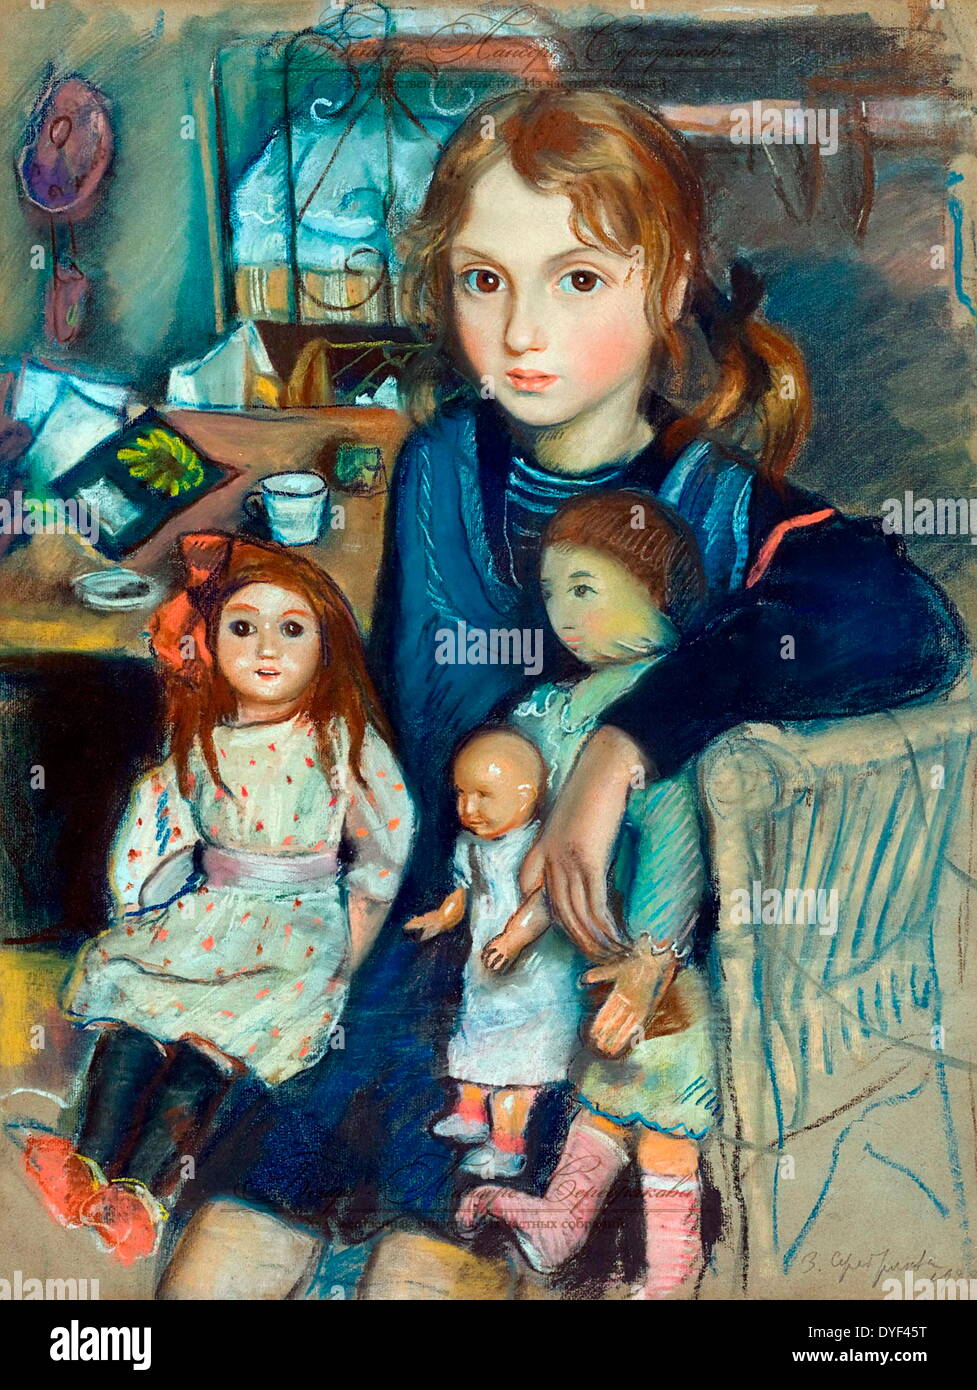 Katya par artiste russe Zinaida Serebriakova. Vécu entre 1884-1967. Zinaida a été parmi les premières femmes artistes russes d'obtenir la reconnaissance. L'image montre une représentation d'une jeune fille et ses poupées. Banque D'Images